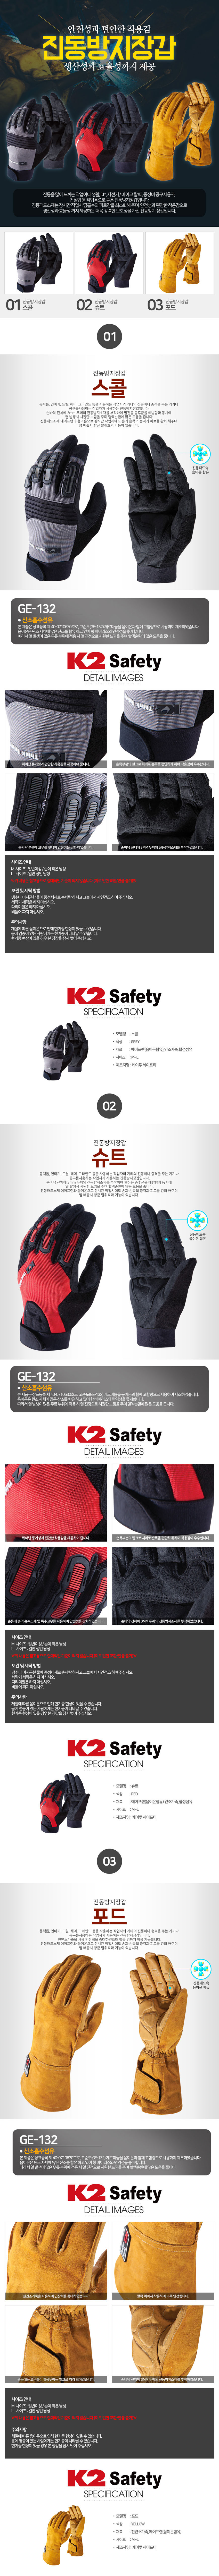 HHS_gloves.jpg